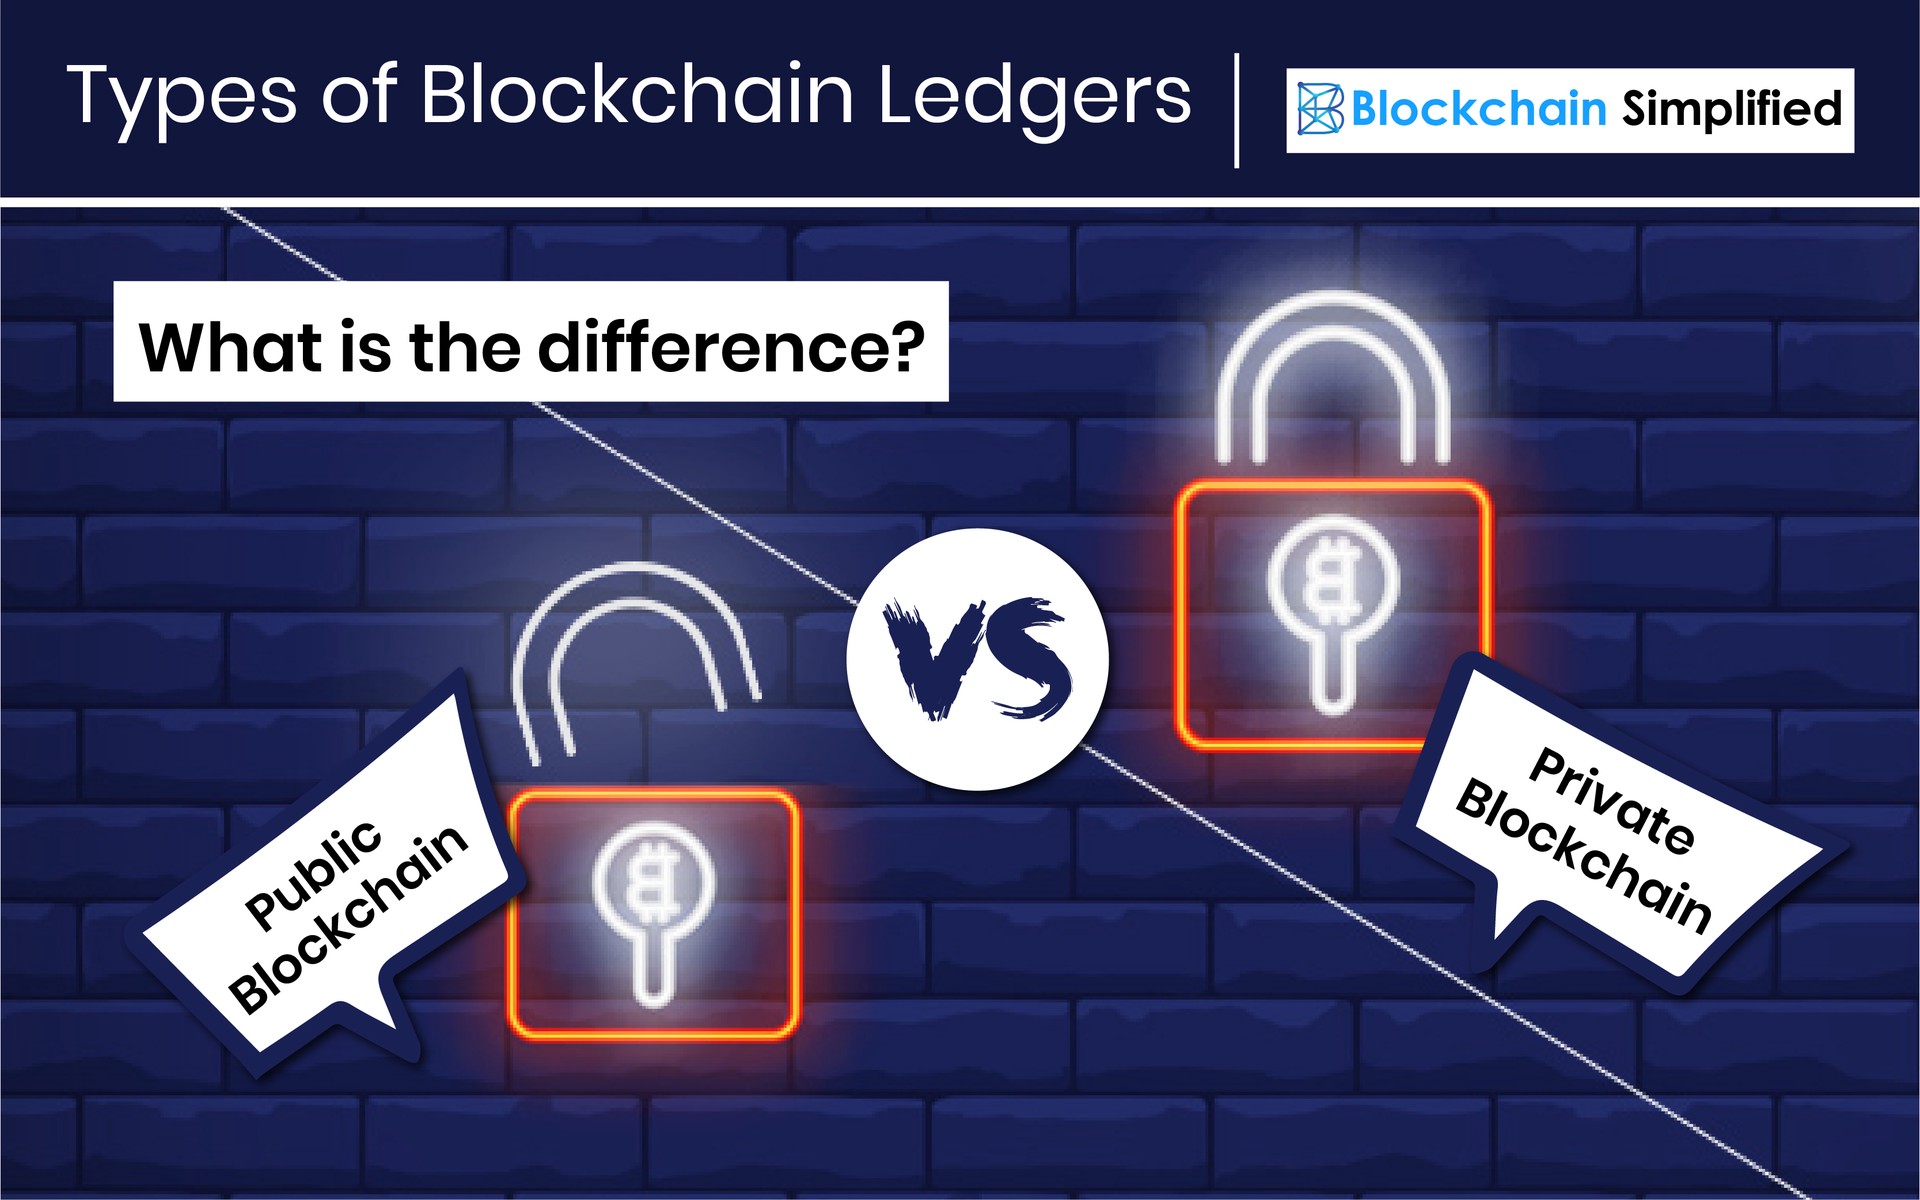 Types of Blockchain Ledger